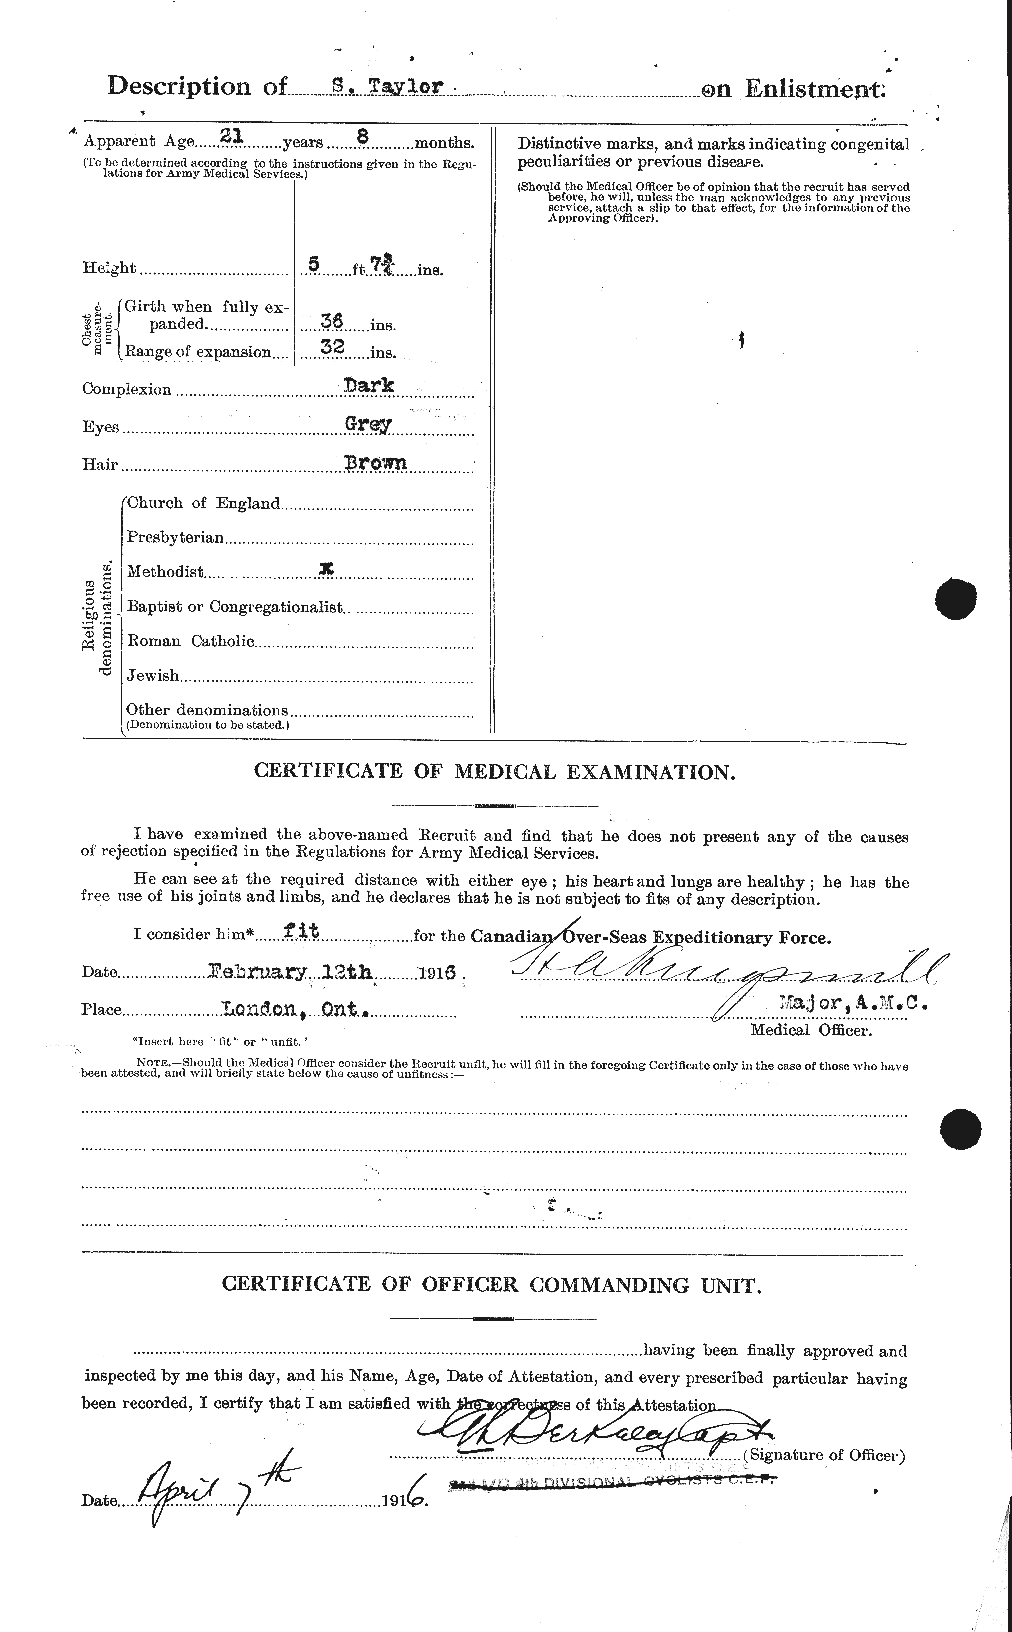 Dossiers du Personnel de la Première Guerre mondiale - CEC 627873b